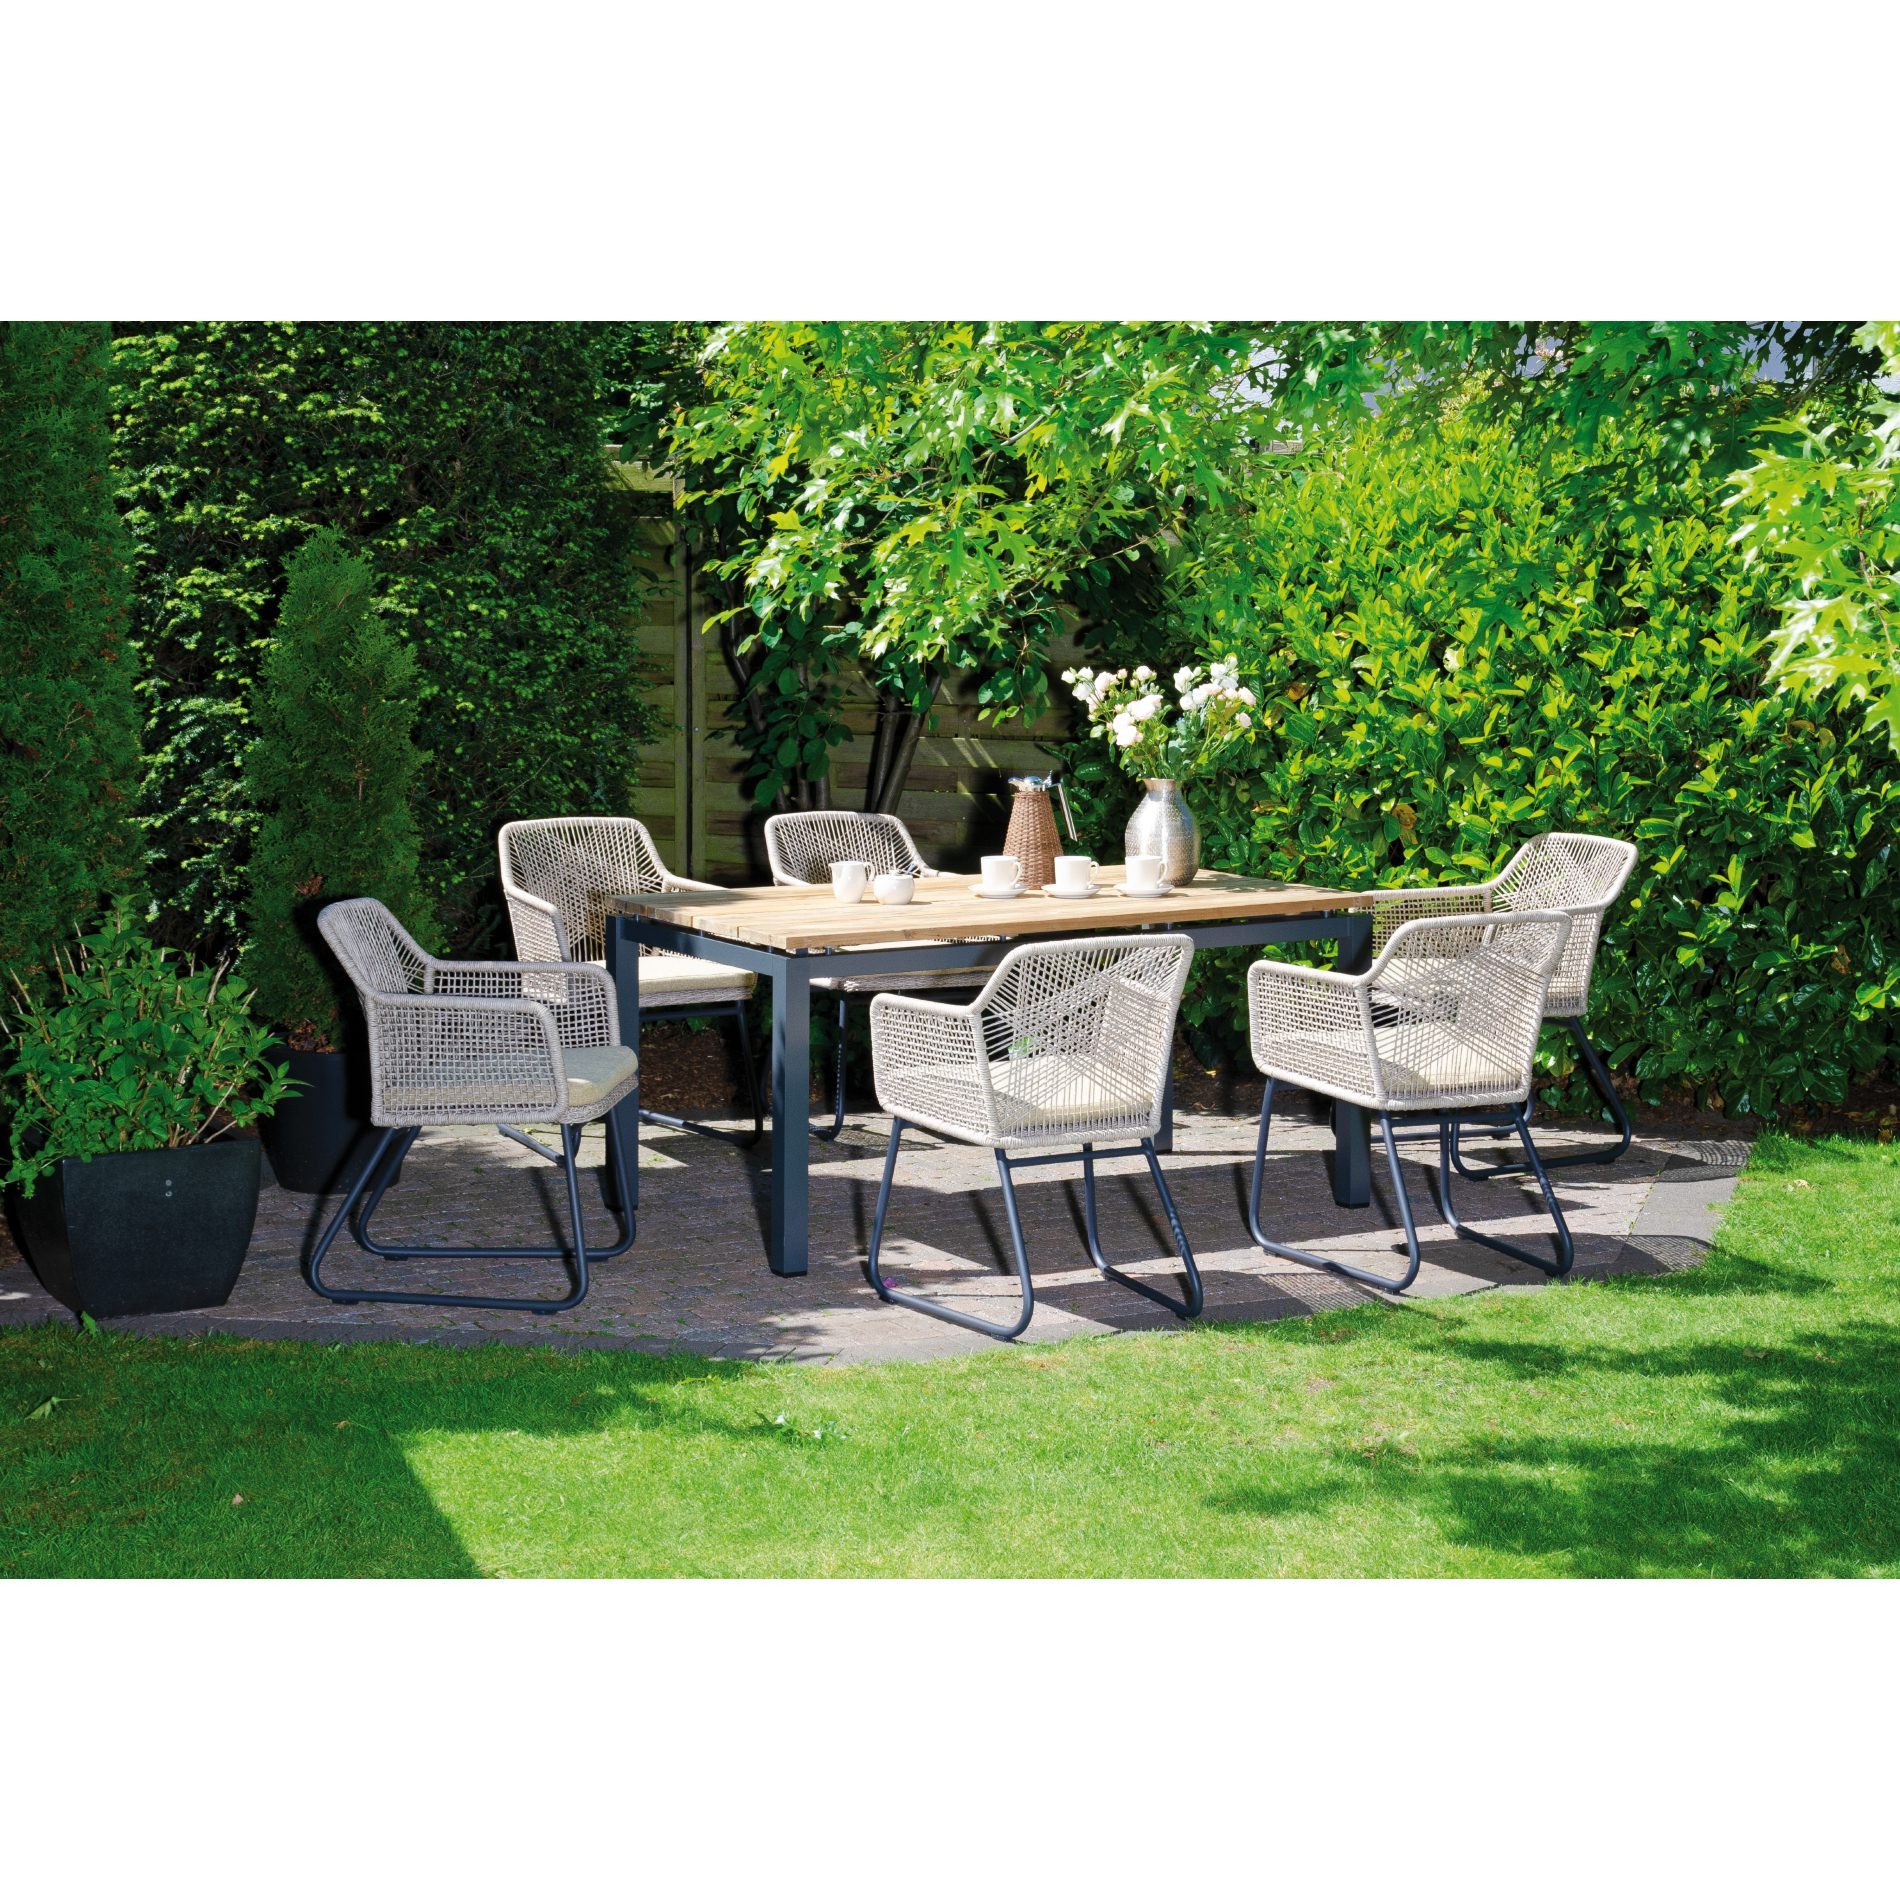 Sonnenpartner Gartenmöbel-Set mit Diningsessel "Couture" und Tisch "Base" 160x90cm, Tischplatte Solid, Gestelle Aluminium anthrazit